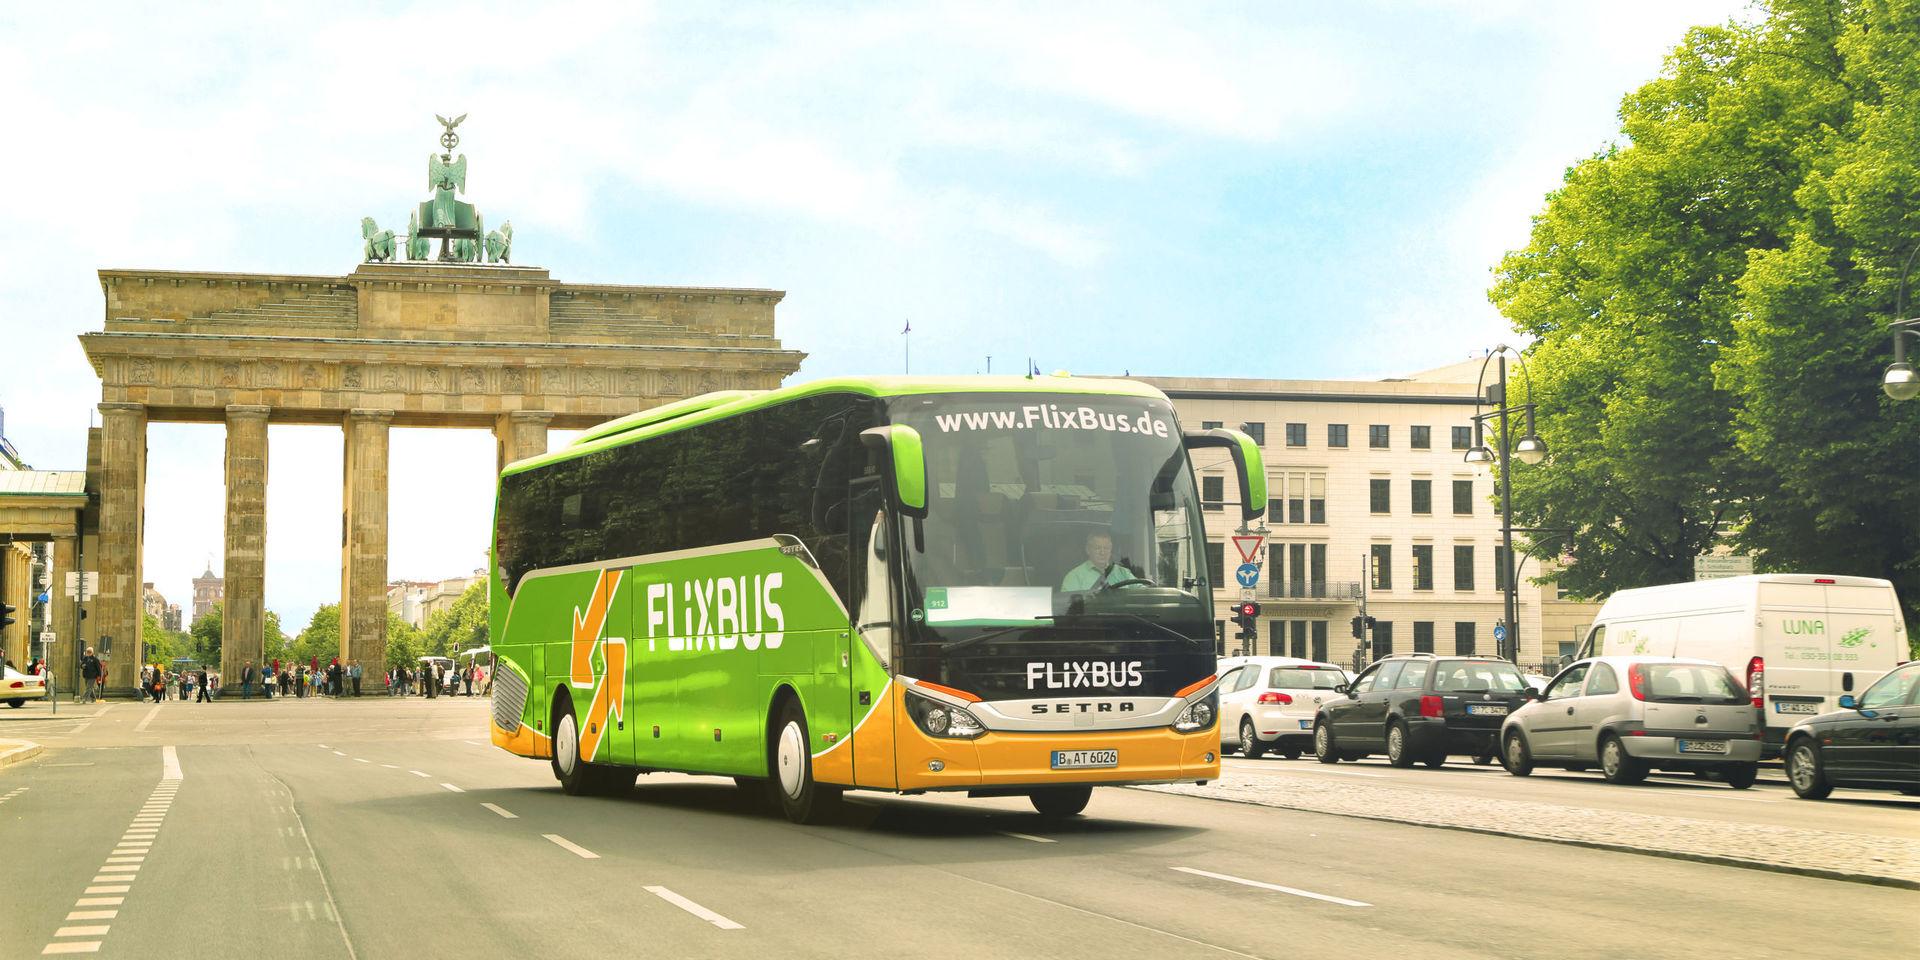 Det tyska bussföretaget bygger ut svenska verksamheten med tåg mellan storstäderna.